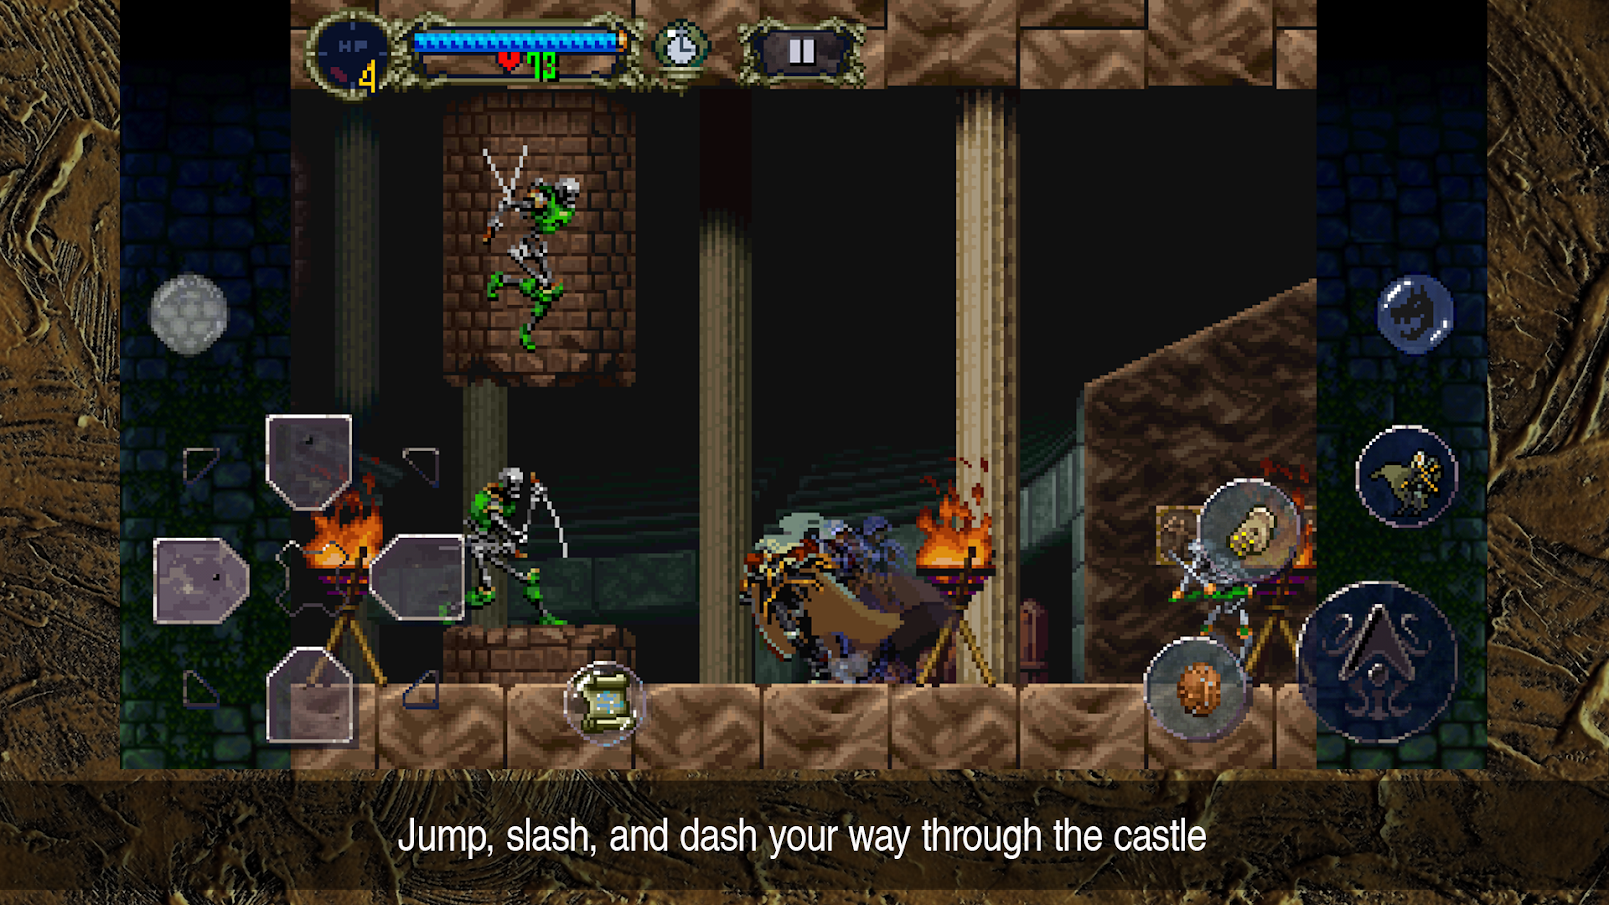 captura de tela do jogo Castlevania Symphony of the Night no Android